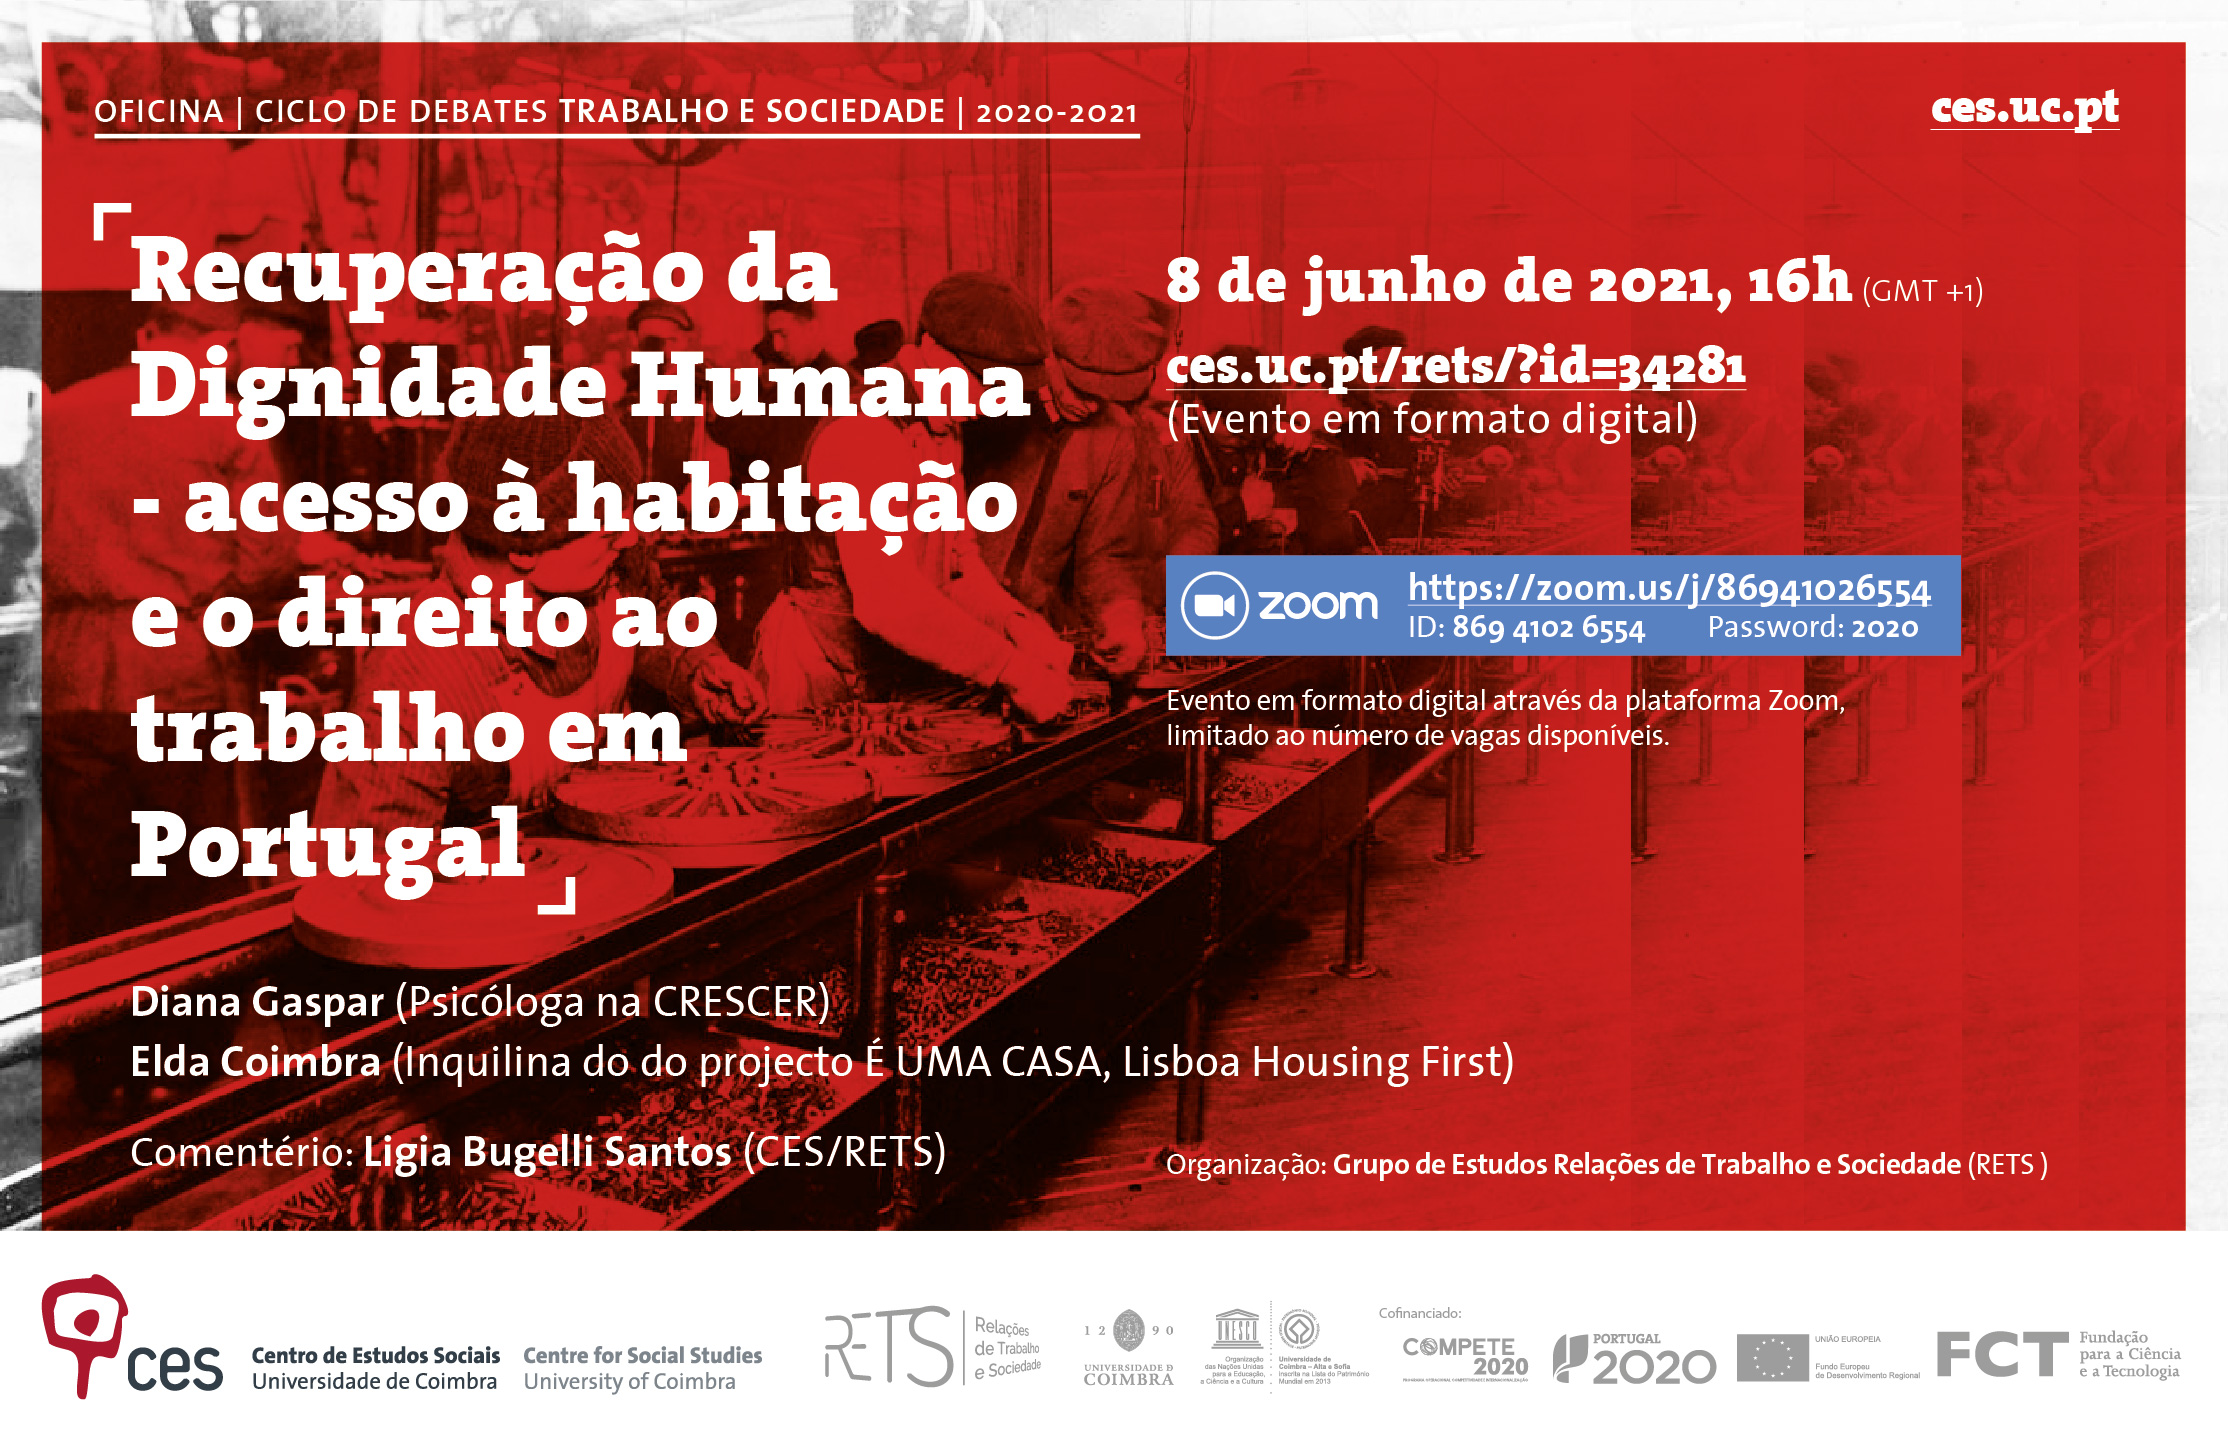 Recuperação da Dignidade Humana - acesso à habitação e o direito ao trabalho em Portugal<span id="edit_34281"><script>$(function() { $('#edit_34281').load( "/myces/user/editobj.php?tipo=evento&id=34281" ); });</script></span>